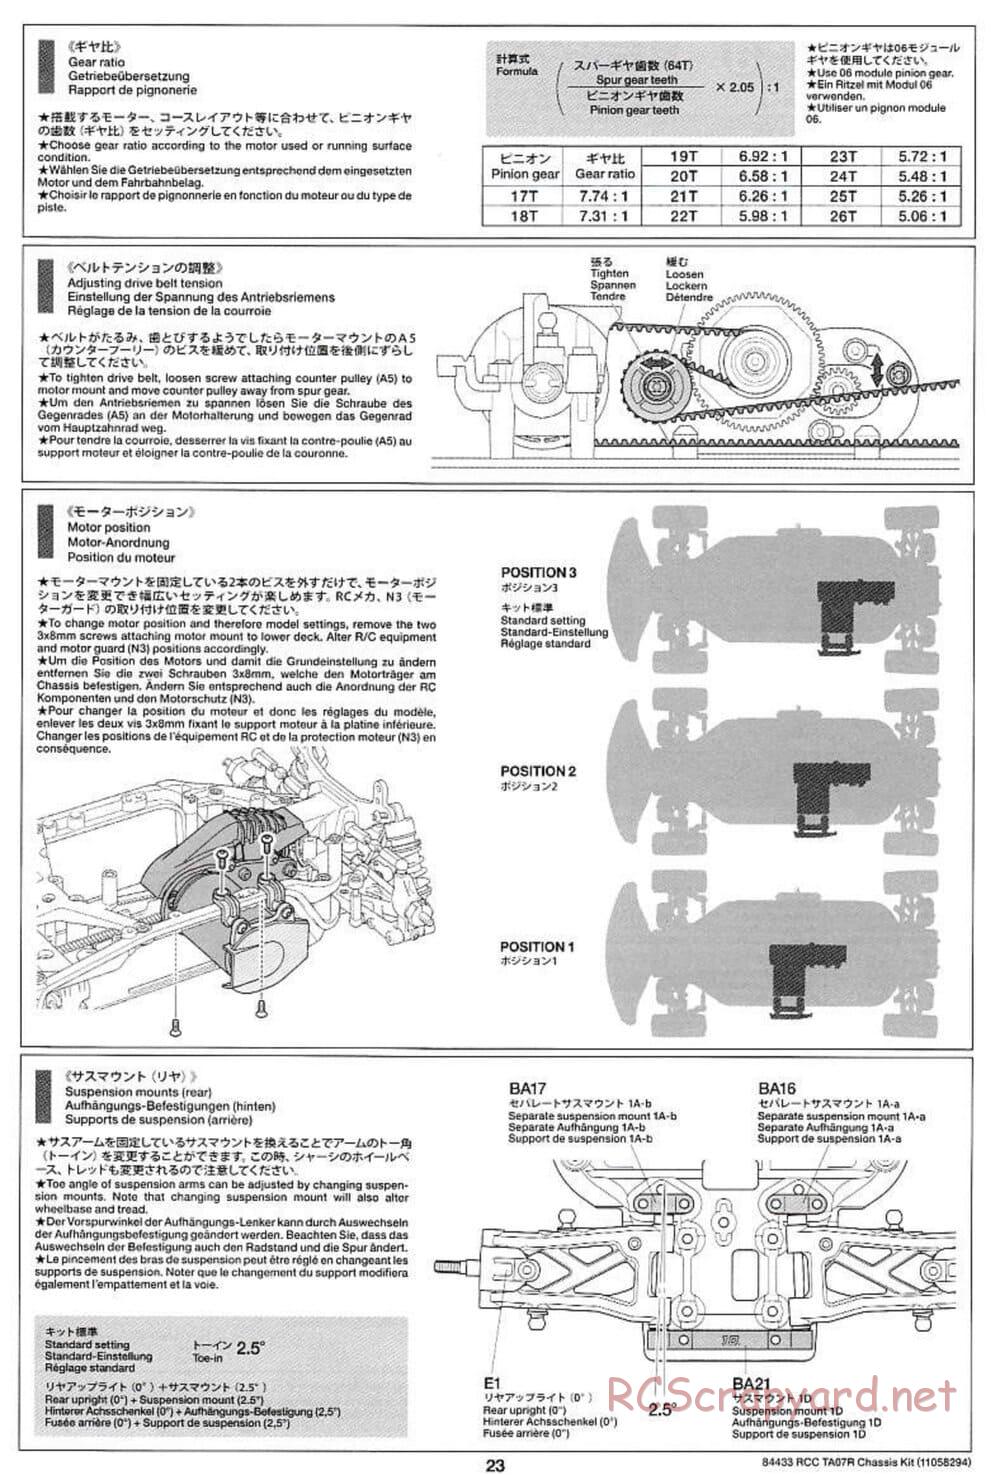 Tamiya - TA07 R Chassis - Manual - Page 23